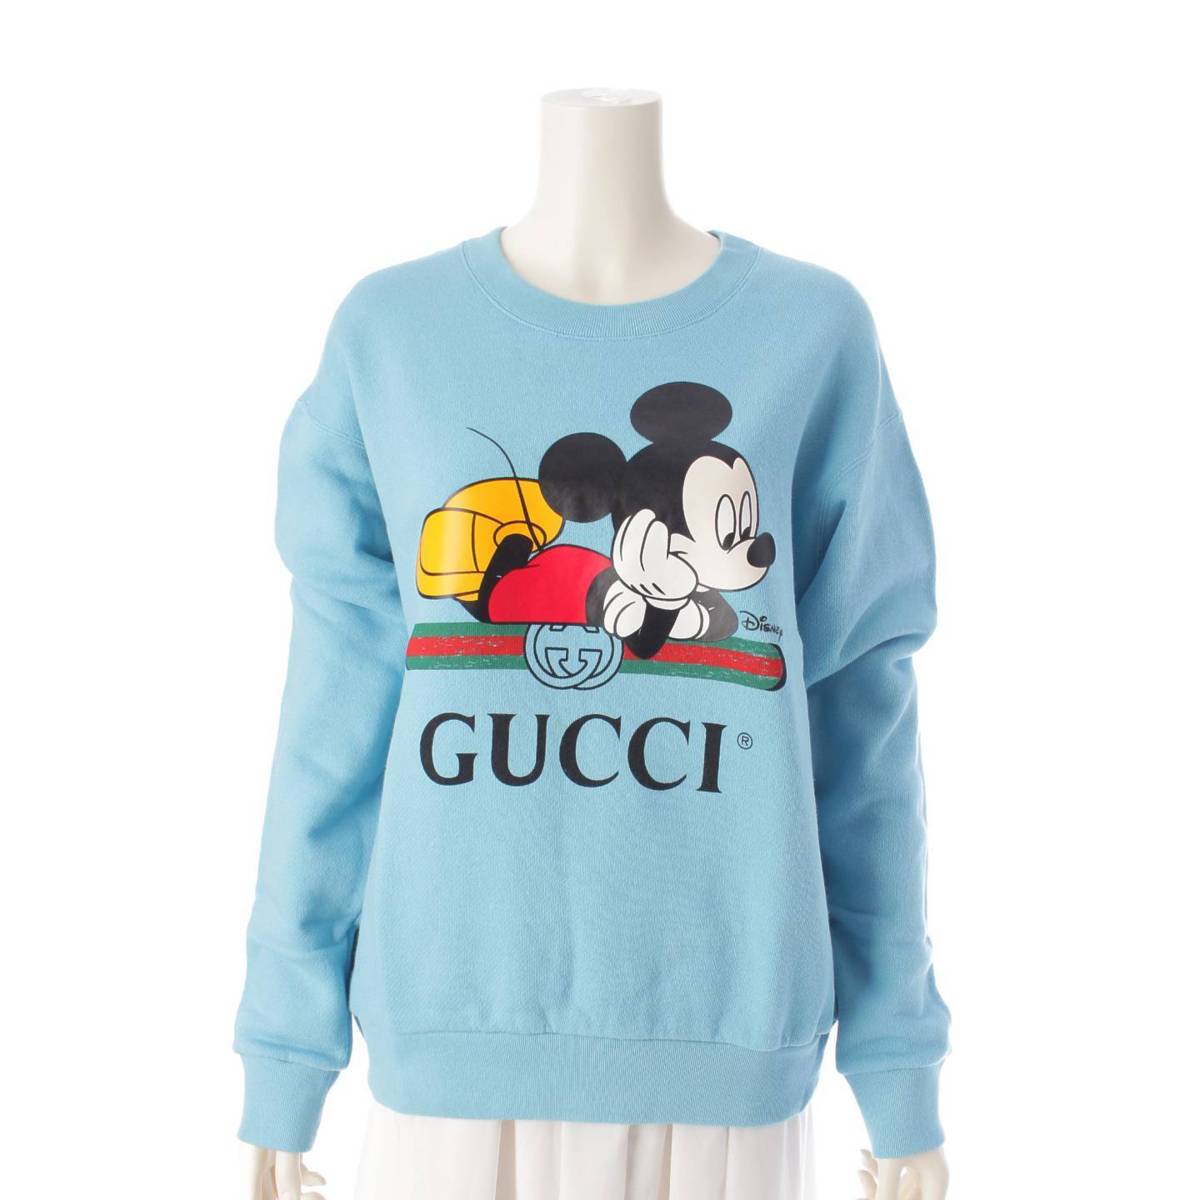 グッチ(Gucci) ディズニーコラボ ミッキーマウス ニット セーター 